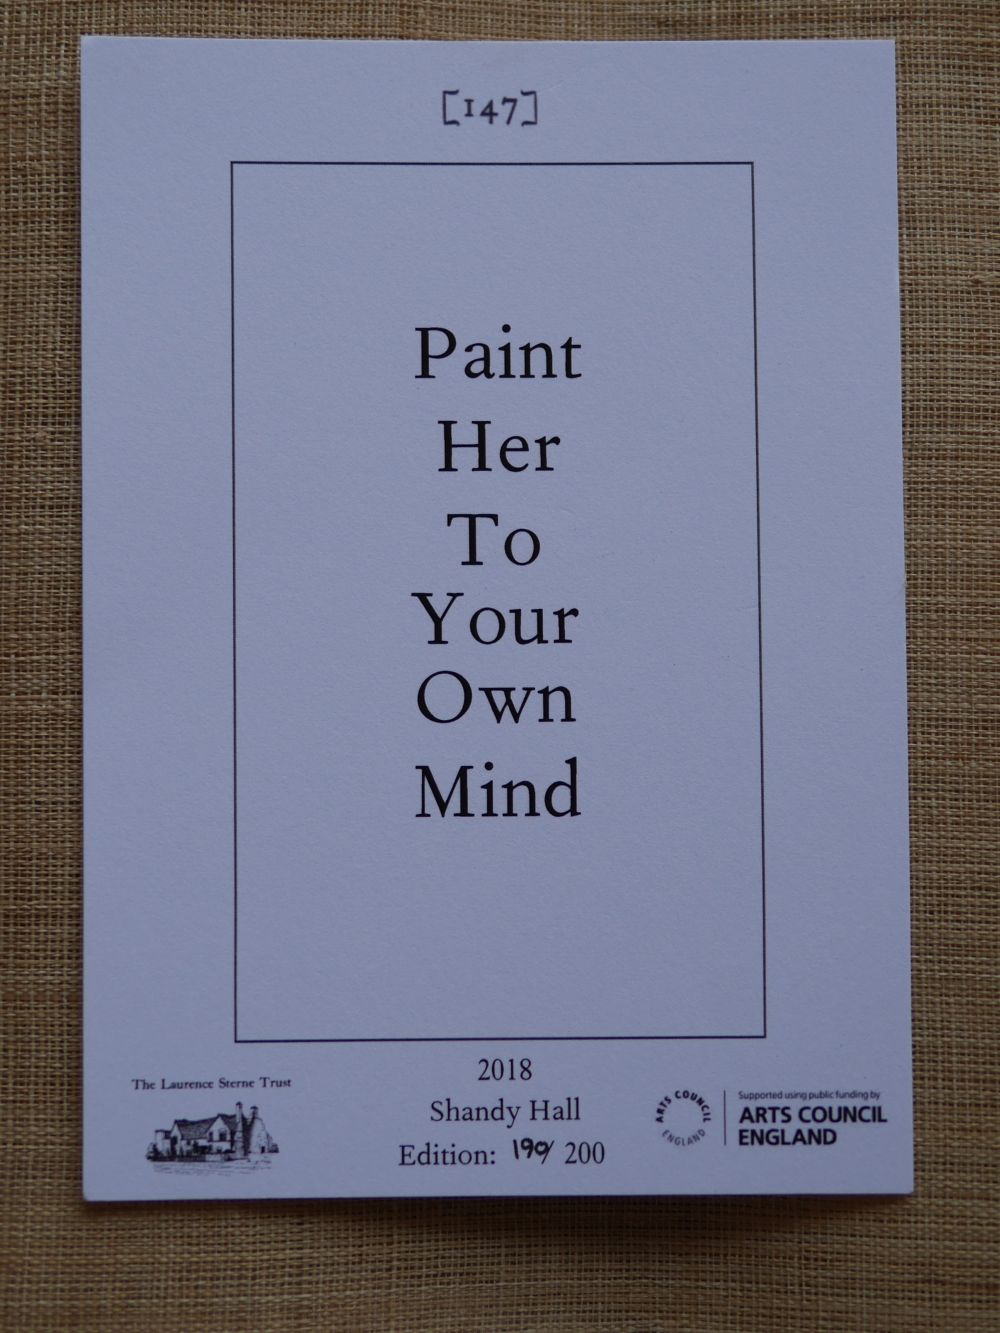 2018年「Paint Her To Your Own Mind」展のカード